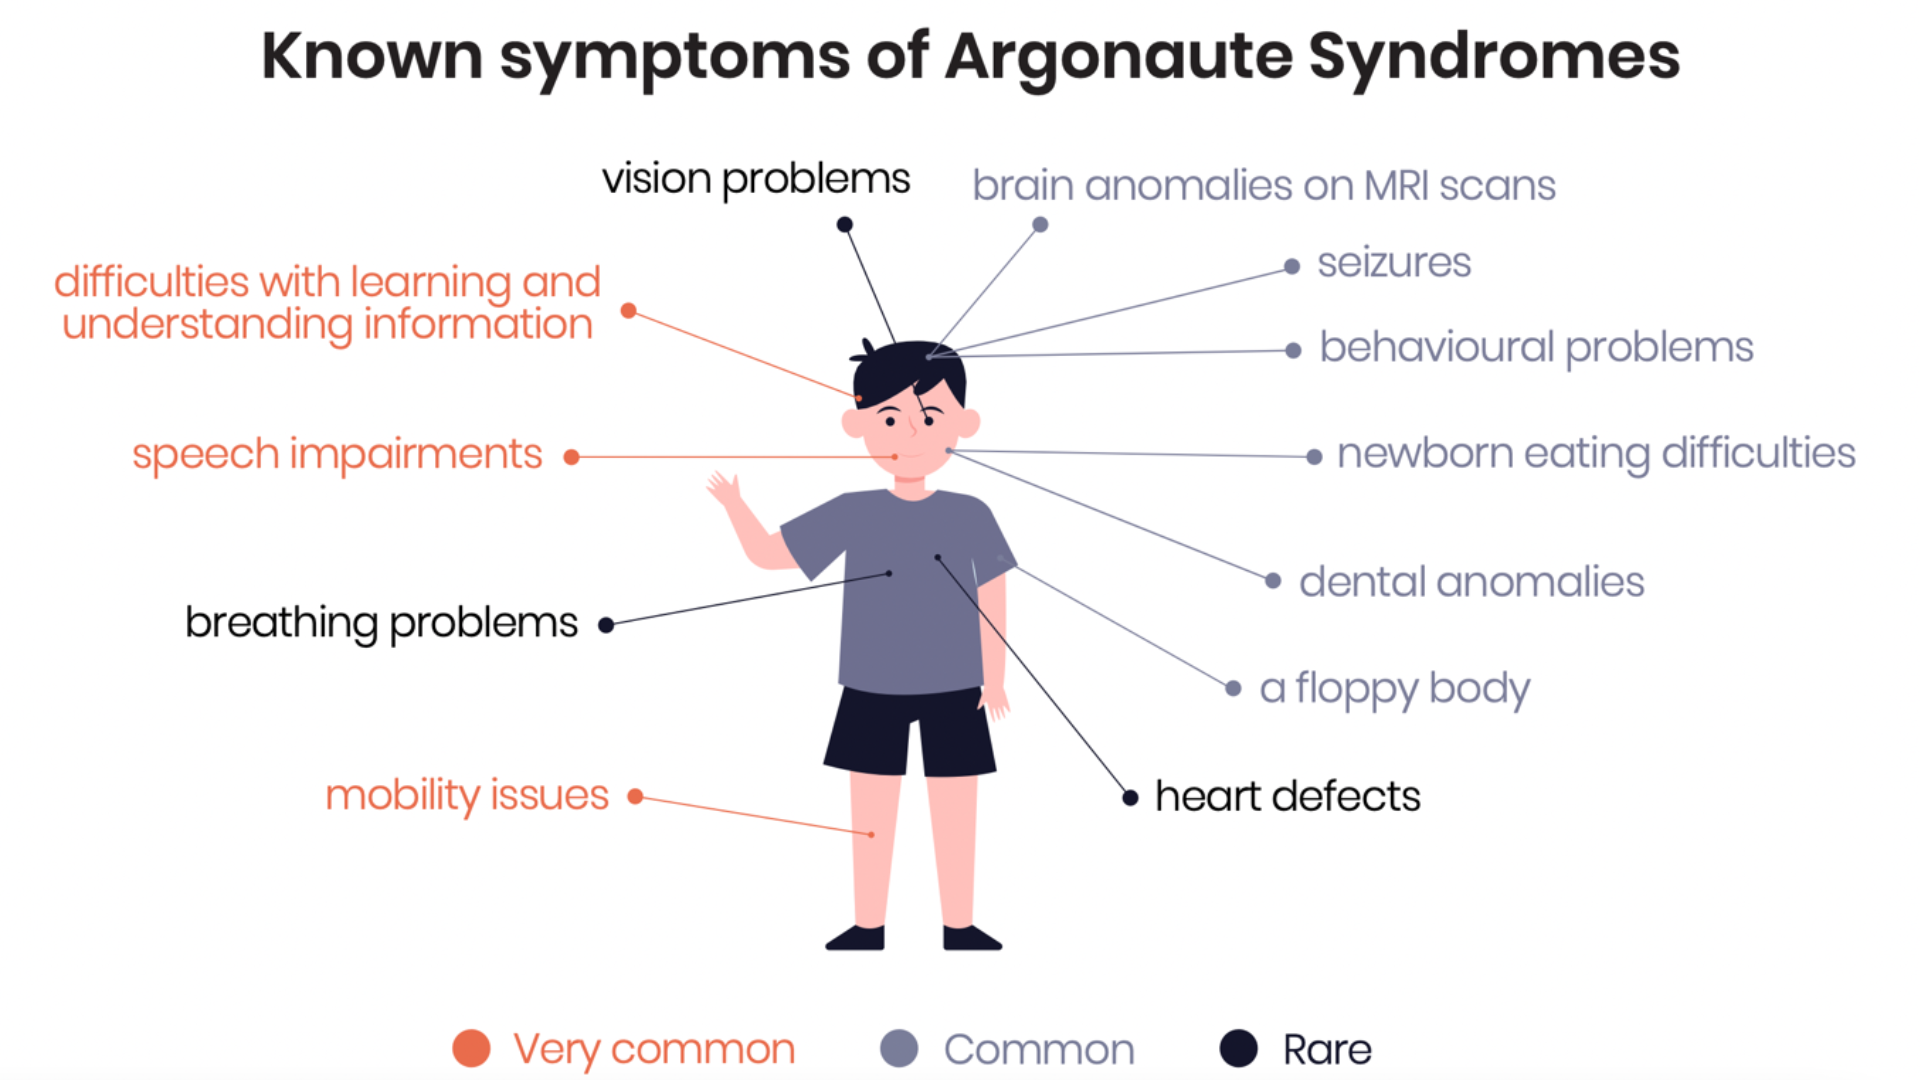 Known symptoms of Argonaute syndromes